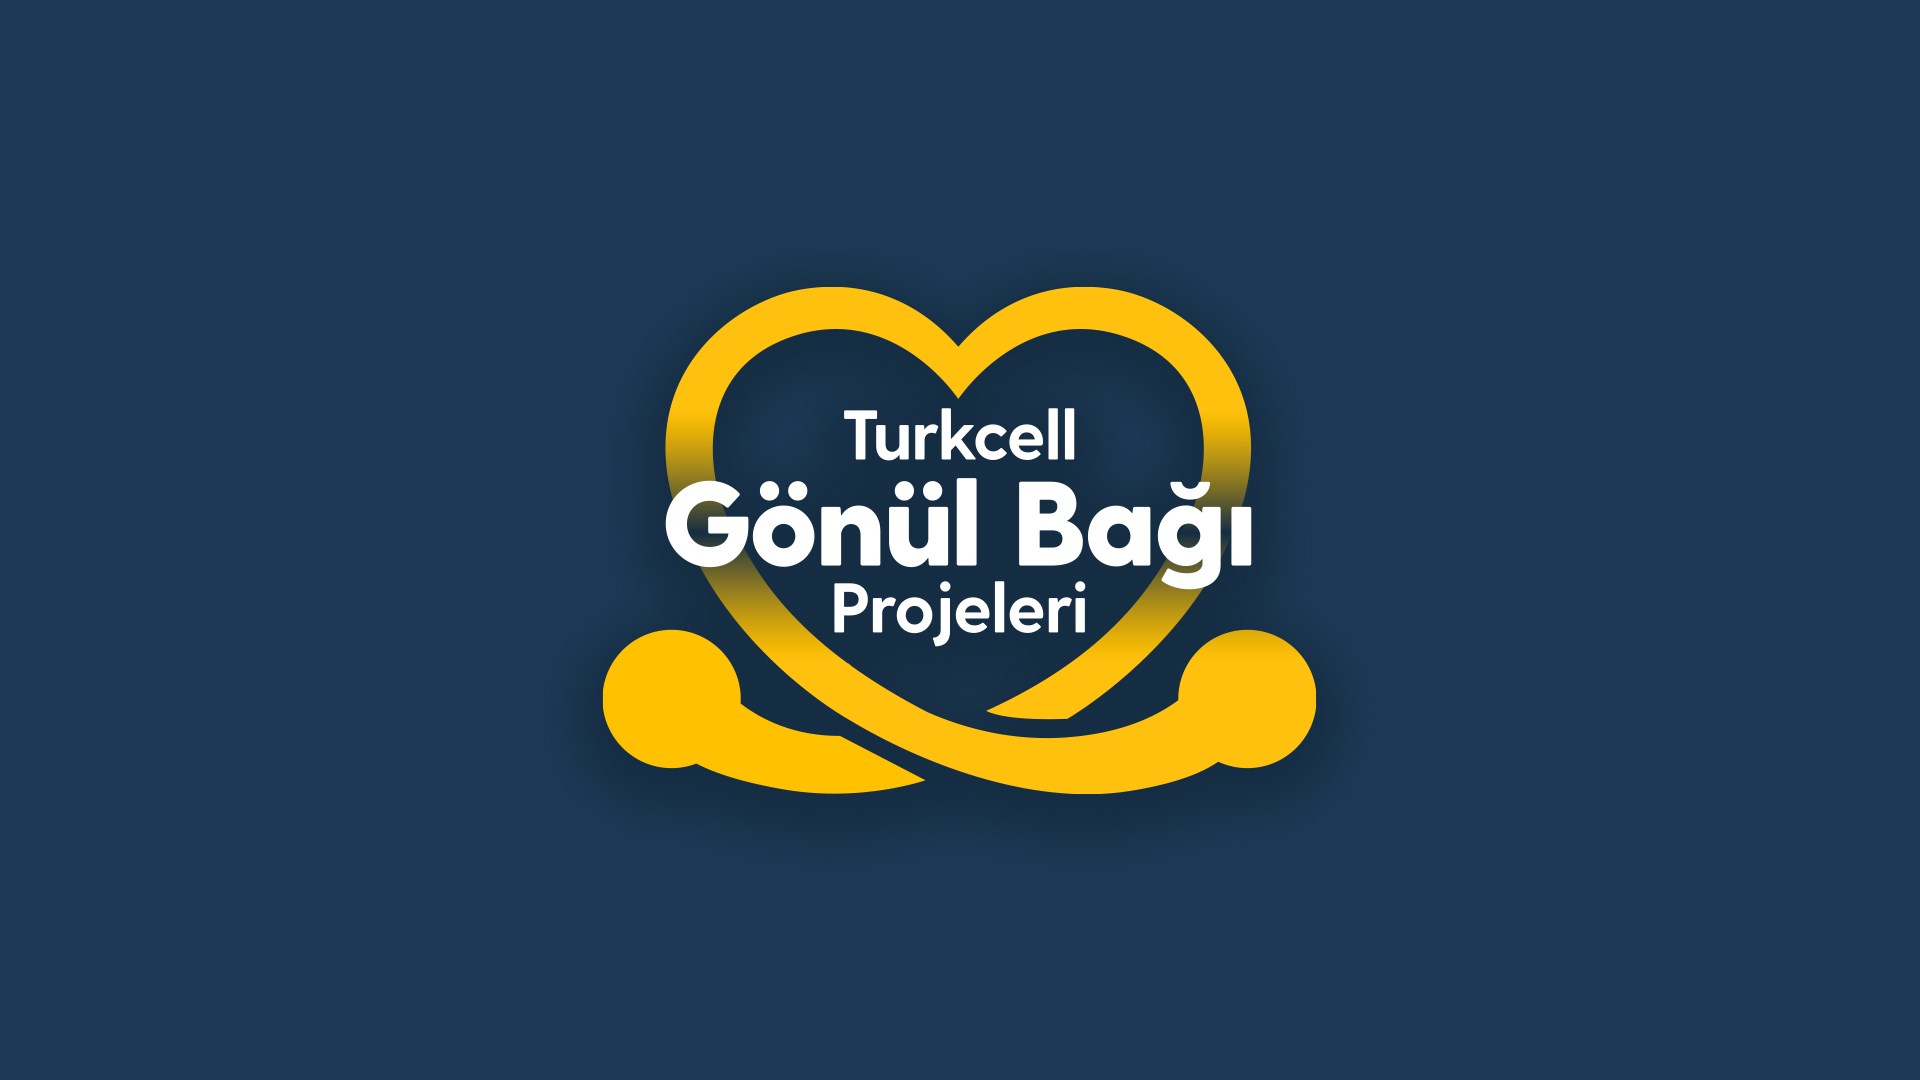 Turkcell deprem bölgesine yönelik Gönül Bağı Projeleri'ni duyurdu